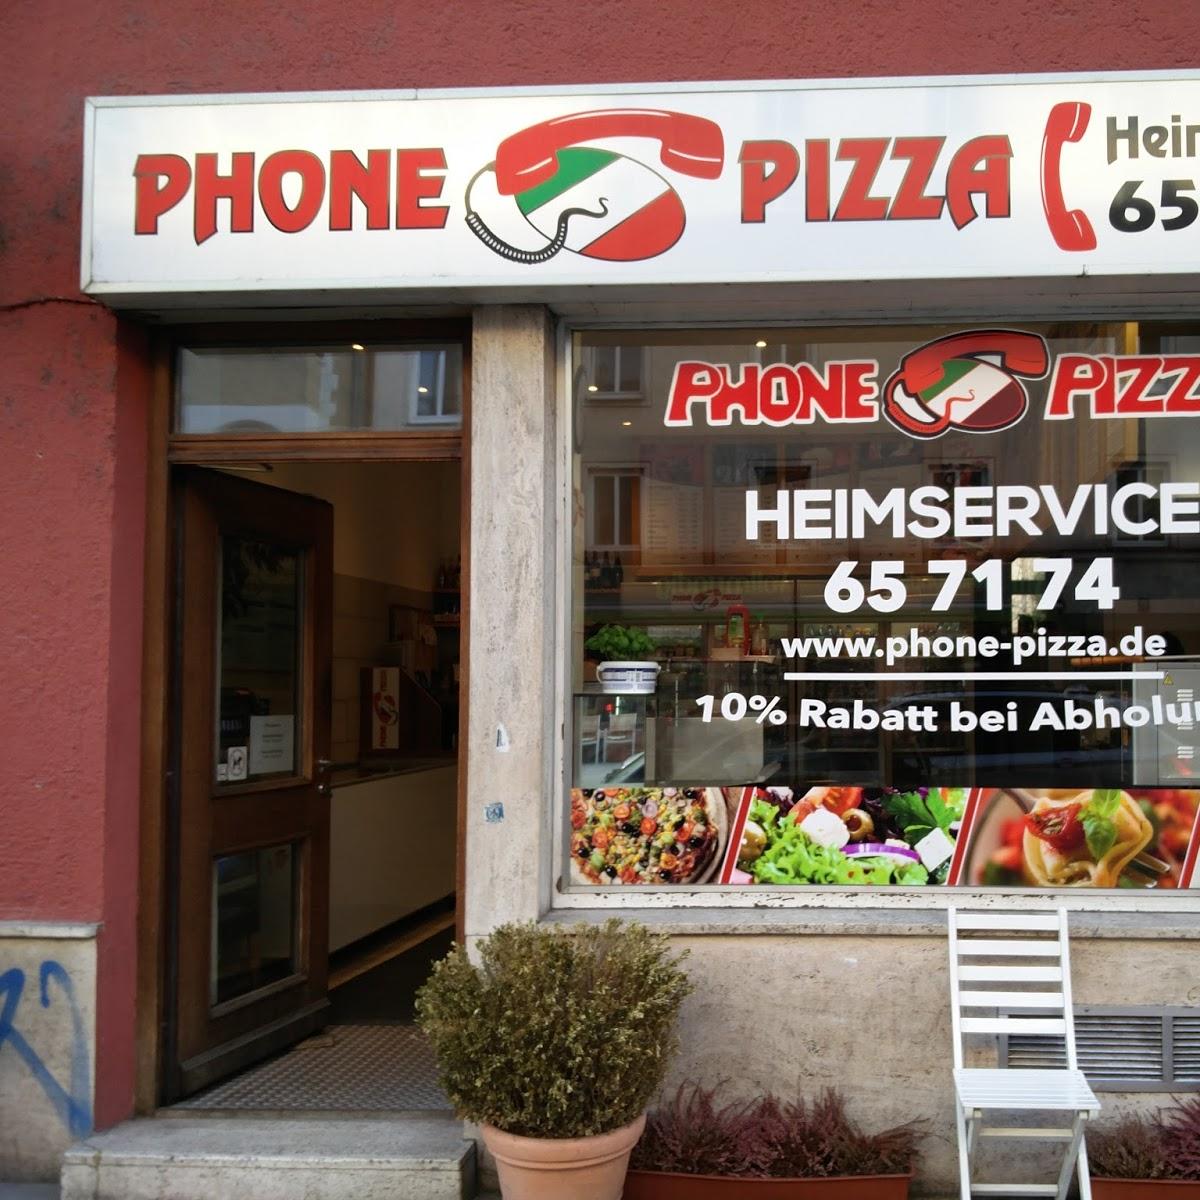 Restaurant "Phone Pizza Heimservice" in München